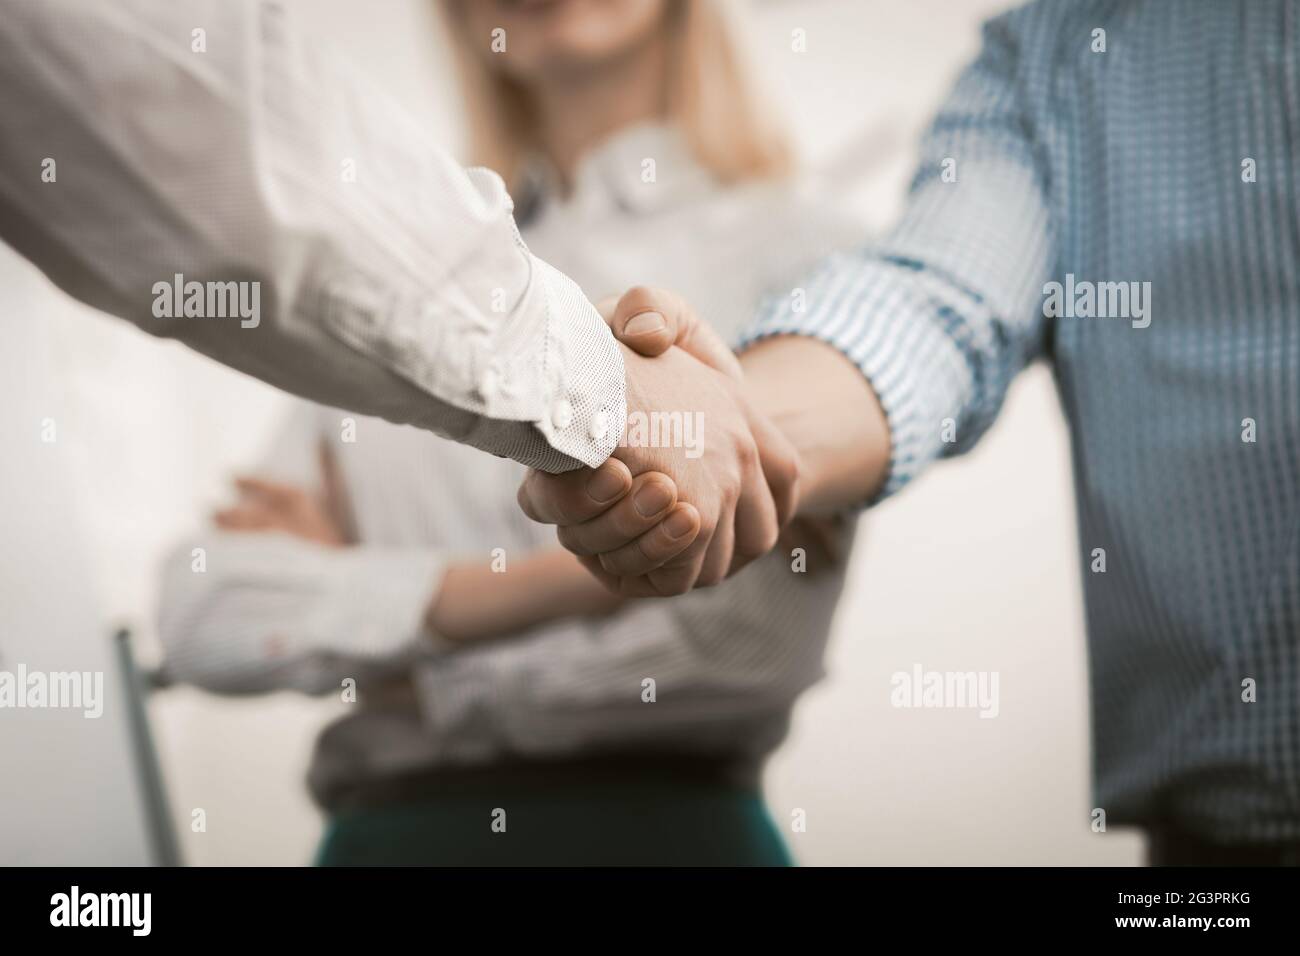 Handschlag von Geschäftsleuten. Zwei Männer in formalwear schütteln Hände in Absprache bei Business Meeting im Büro. Nahaufnahme Stockfoto